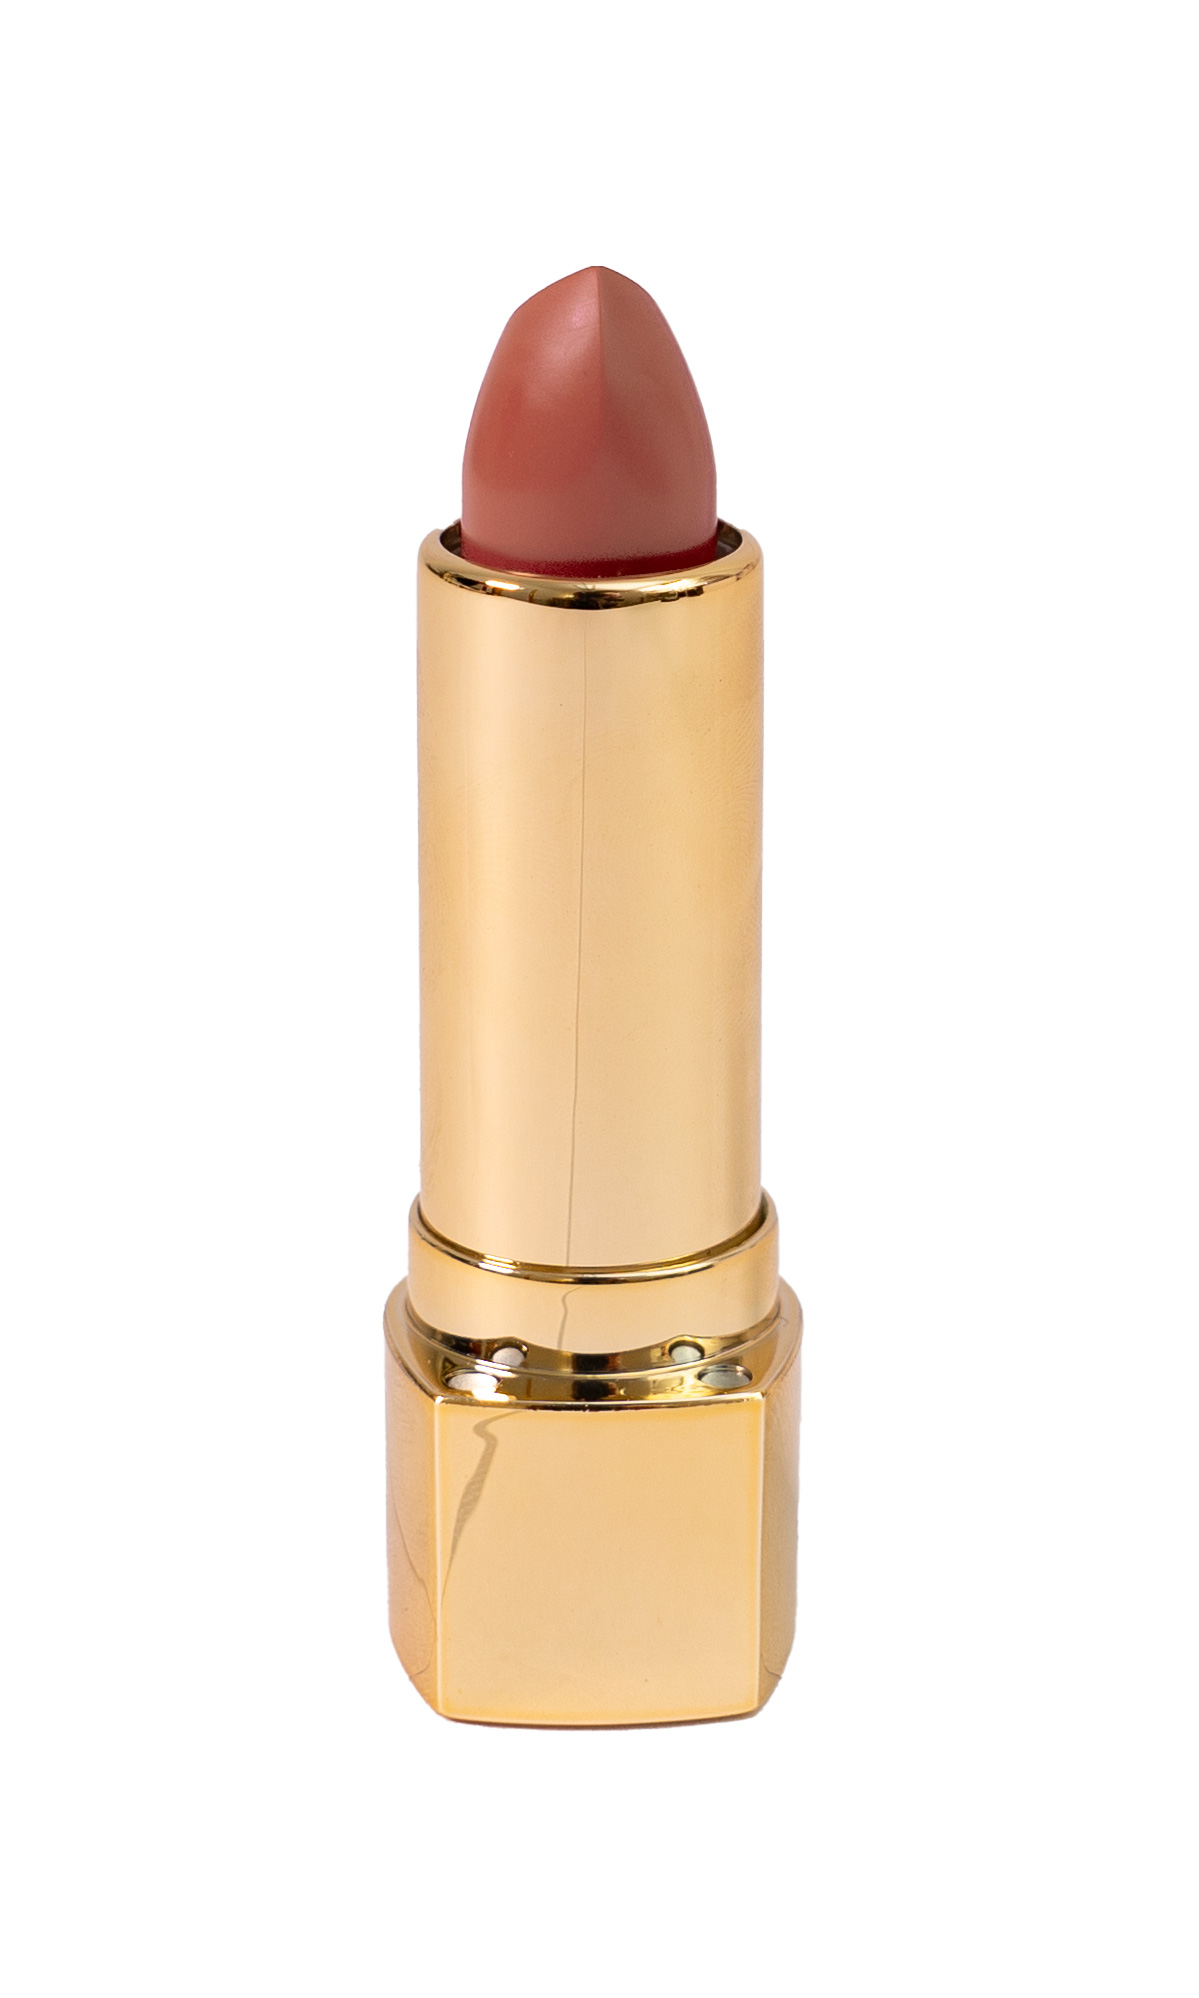 Adessa creamy Lips lipstick, chillout girl #513, 5g